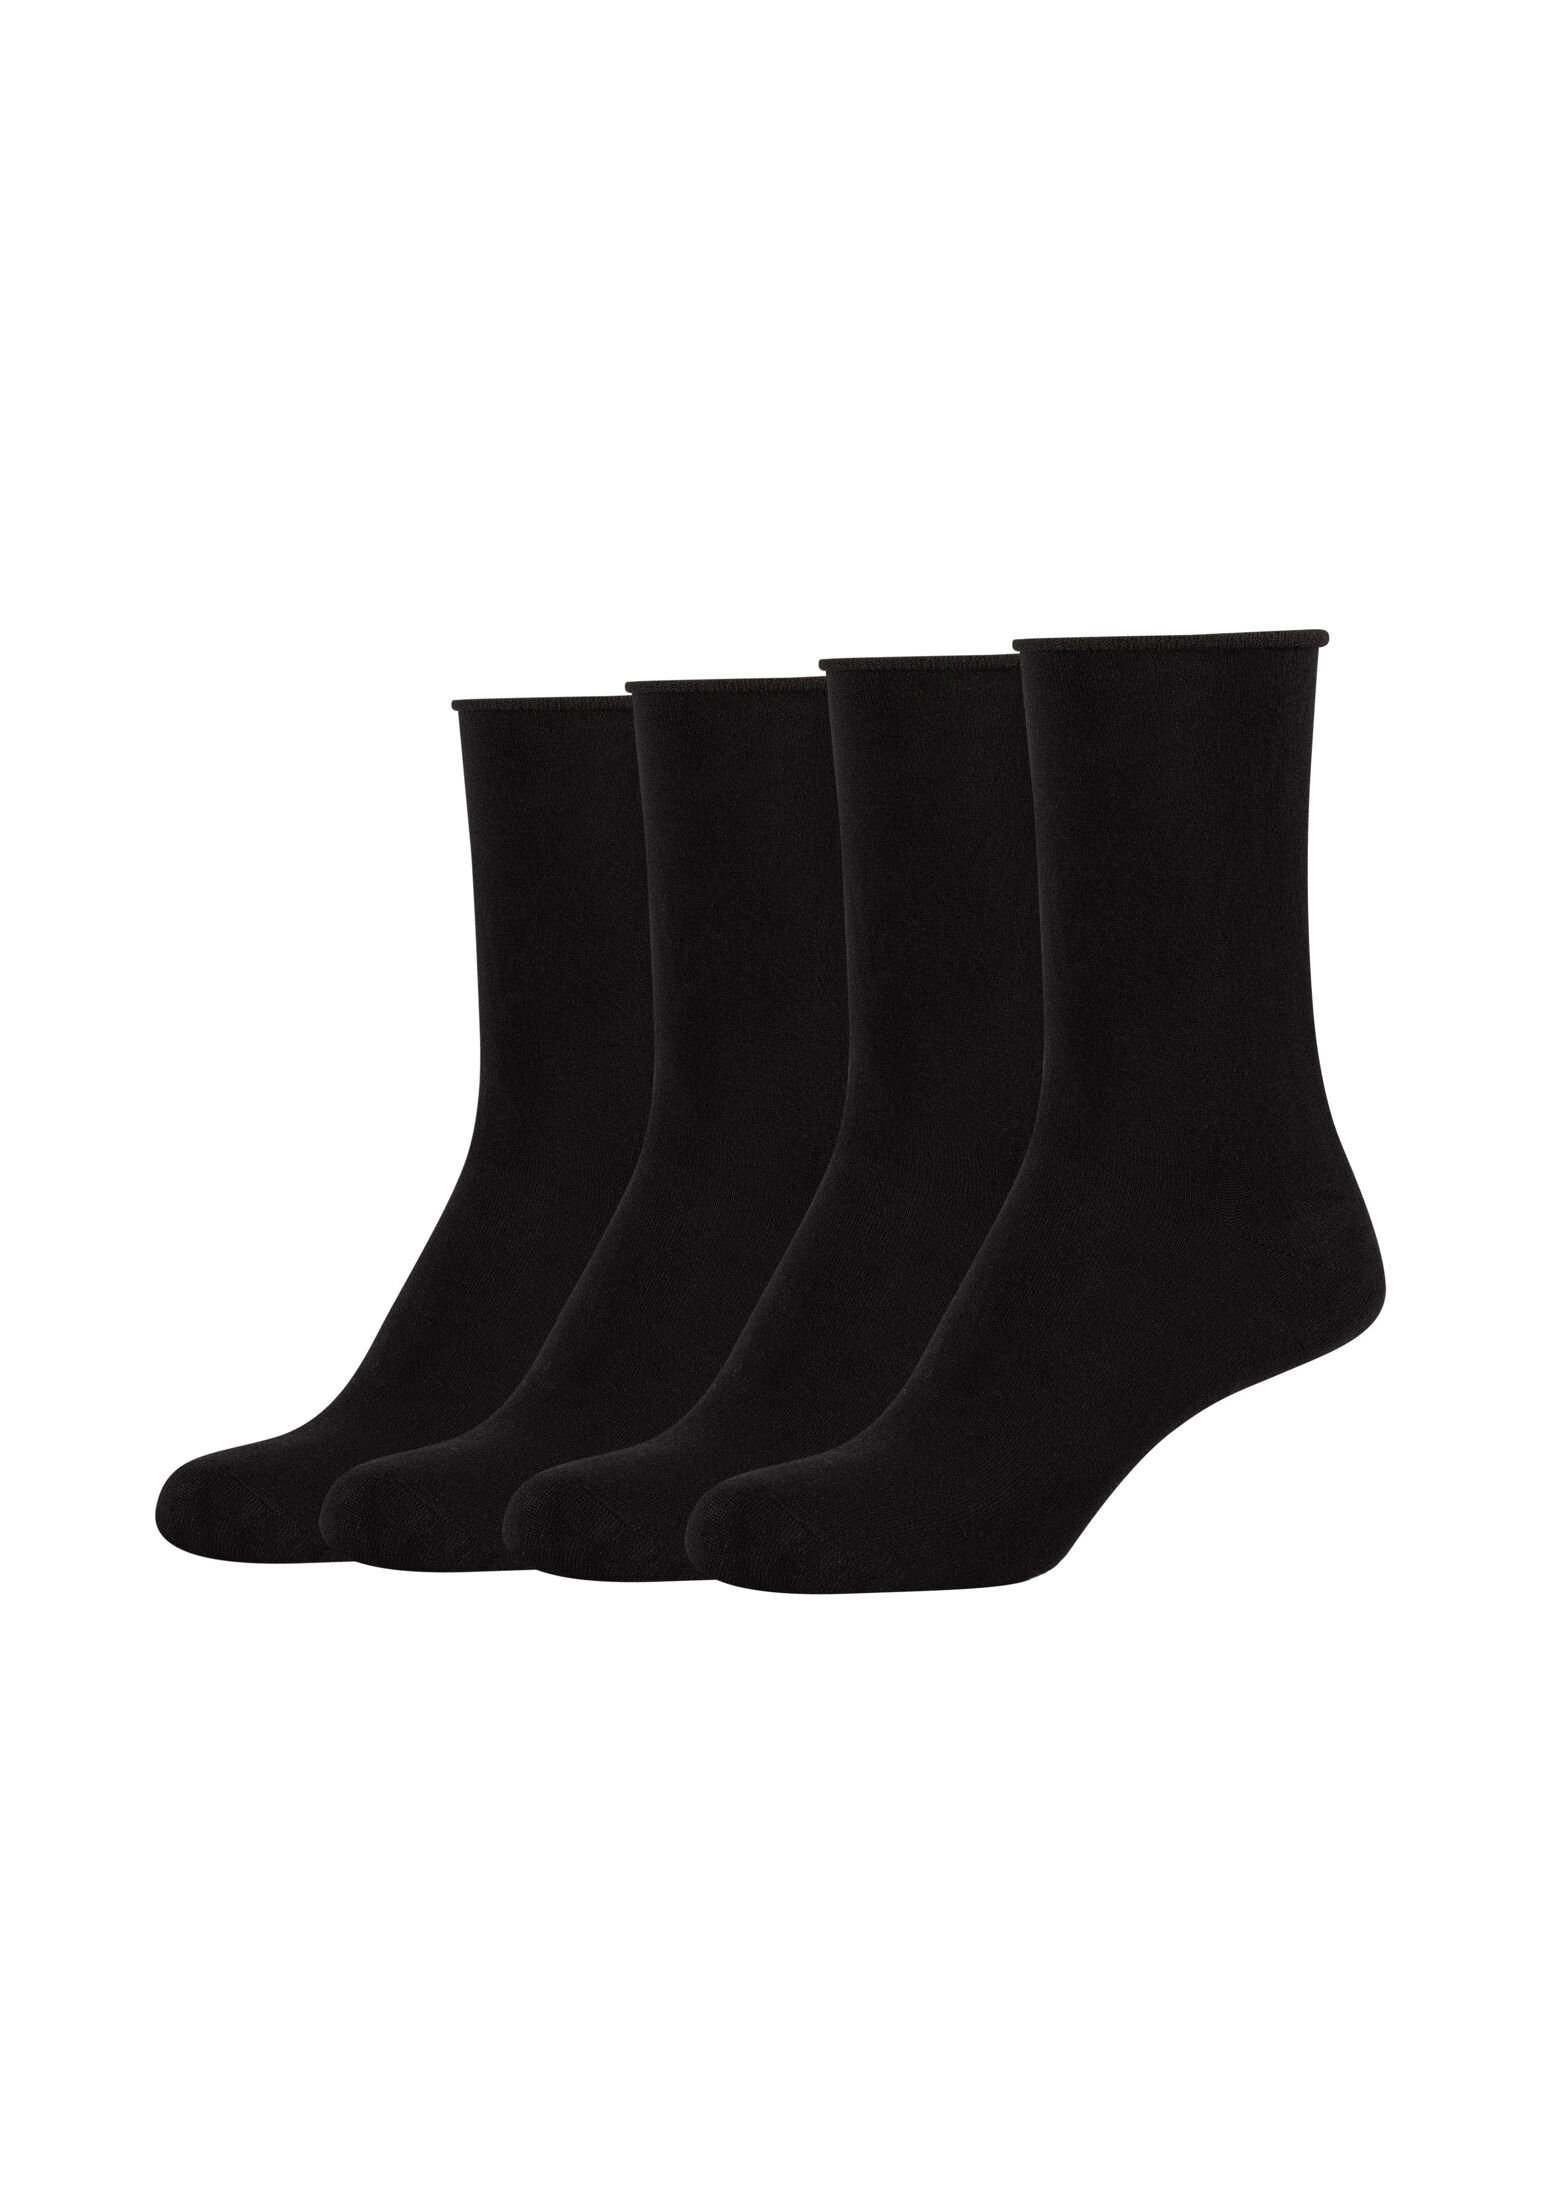 Pack s.Oliver Socken 4er Socken black